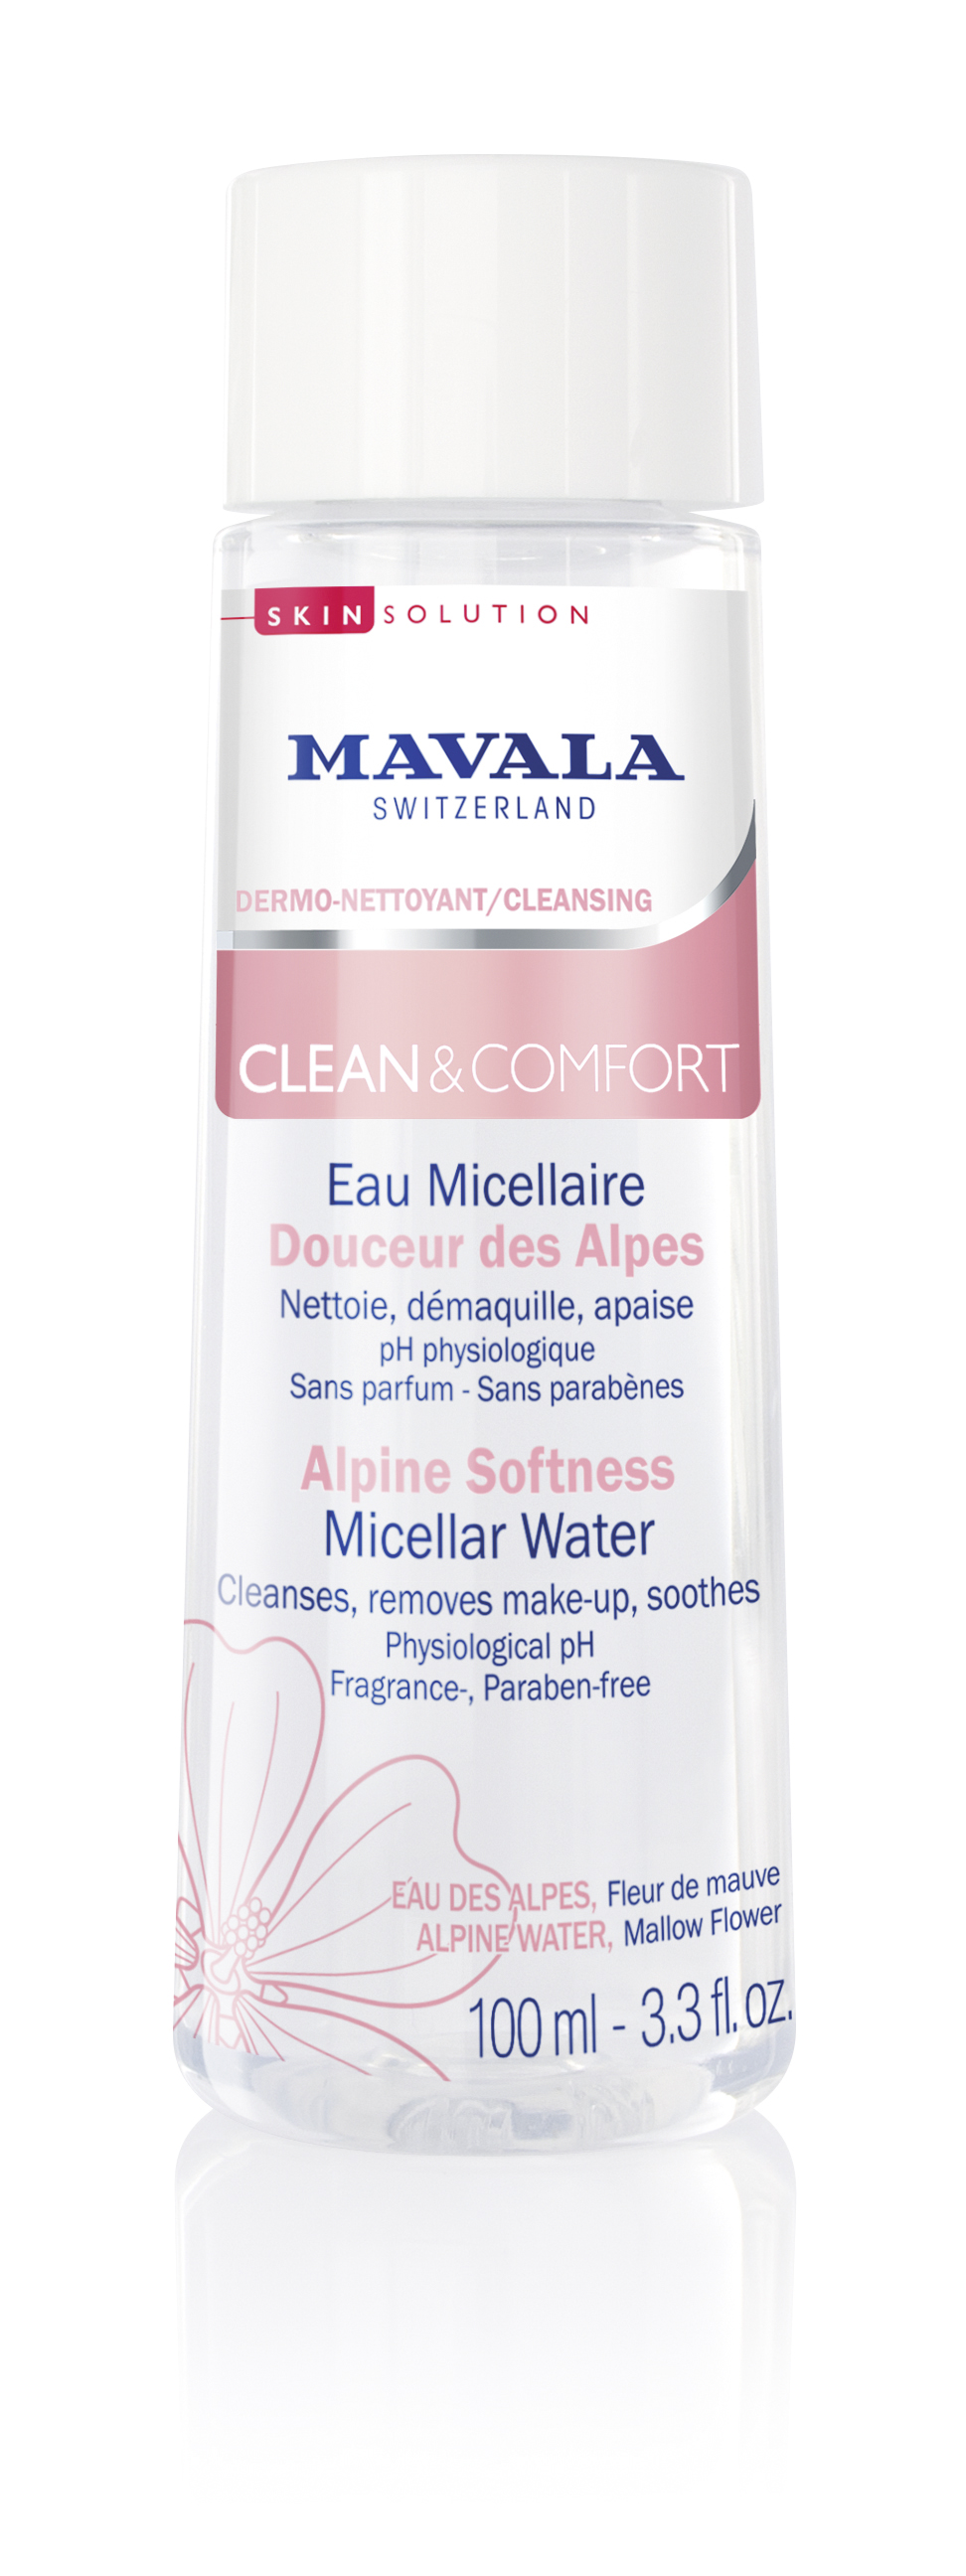 525.60 - CLEAN & COMFORT - Sanftes Alpen-Mizellarwasser - Reinigt, entfernt Make-up und beruhigt - Vegan